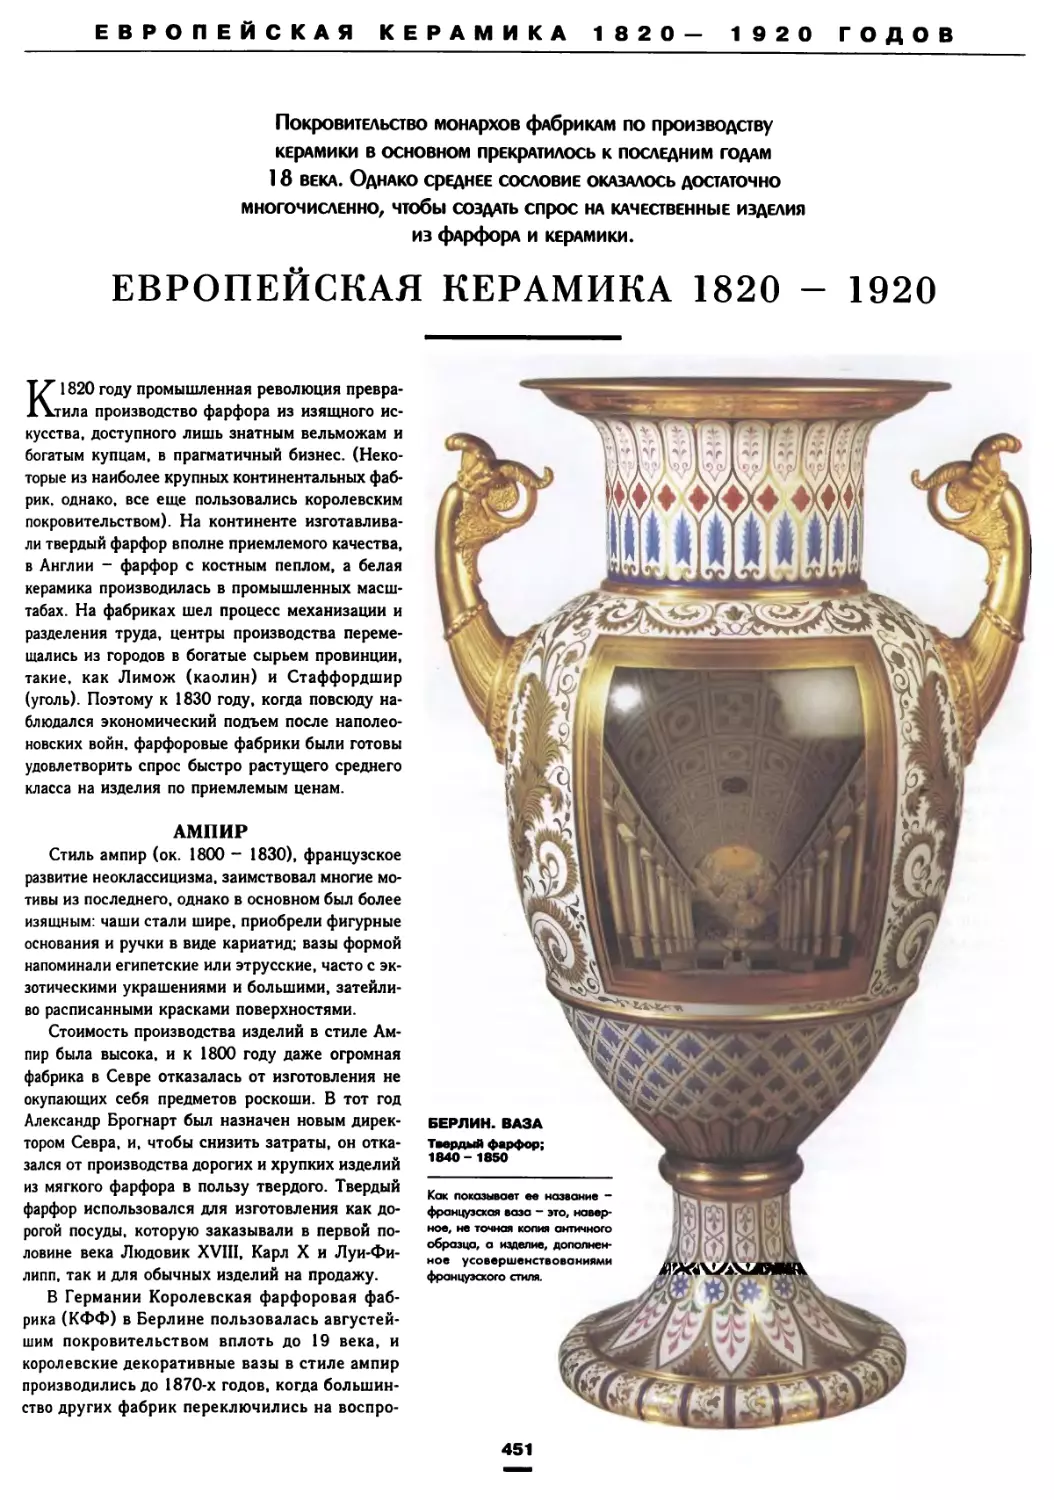 Европейская керамика 1820—1920 гг.